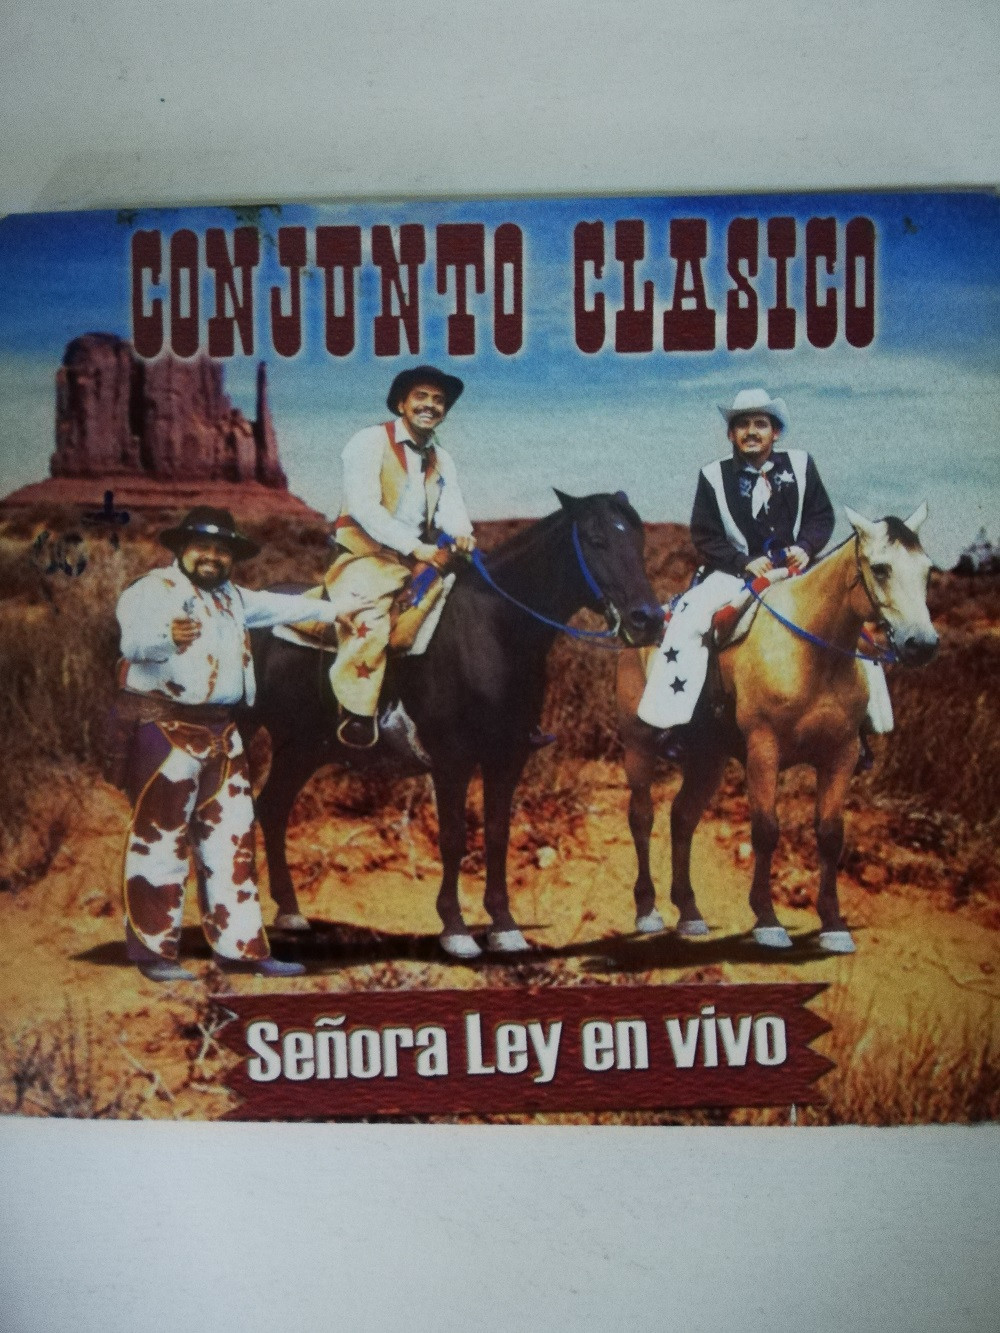 Imagen CD CONJUNTO CLÁSICO - SEÑORA LEY EN VIVO